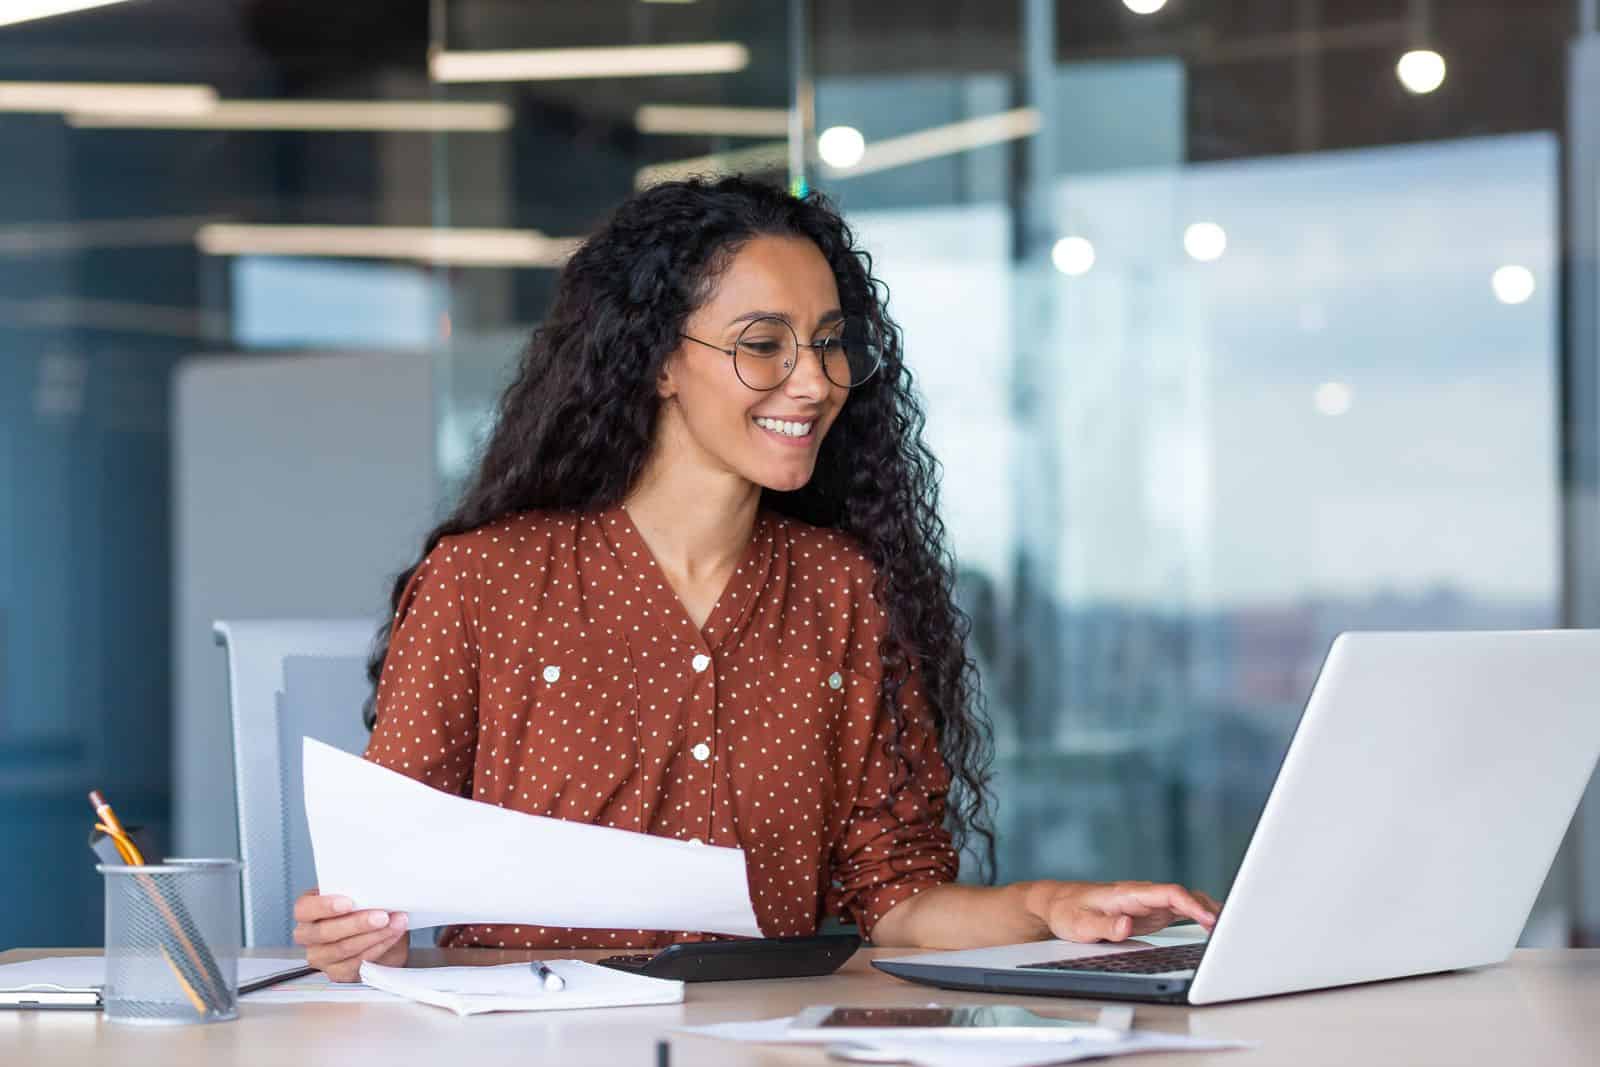 Una mujer sonriente trabajando en una computadora portátil en una oficina.